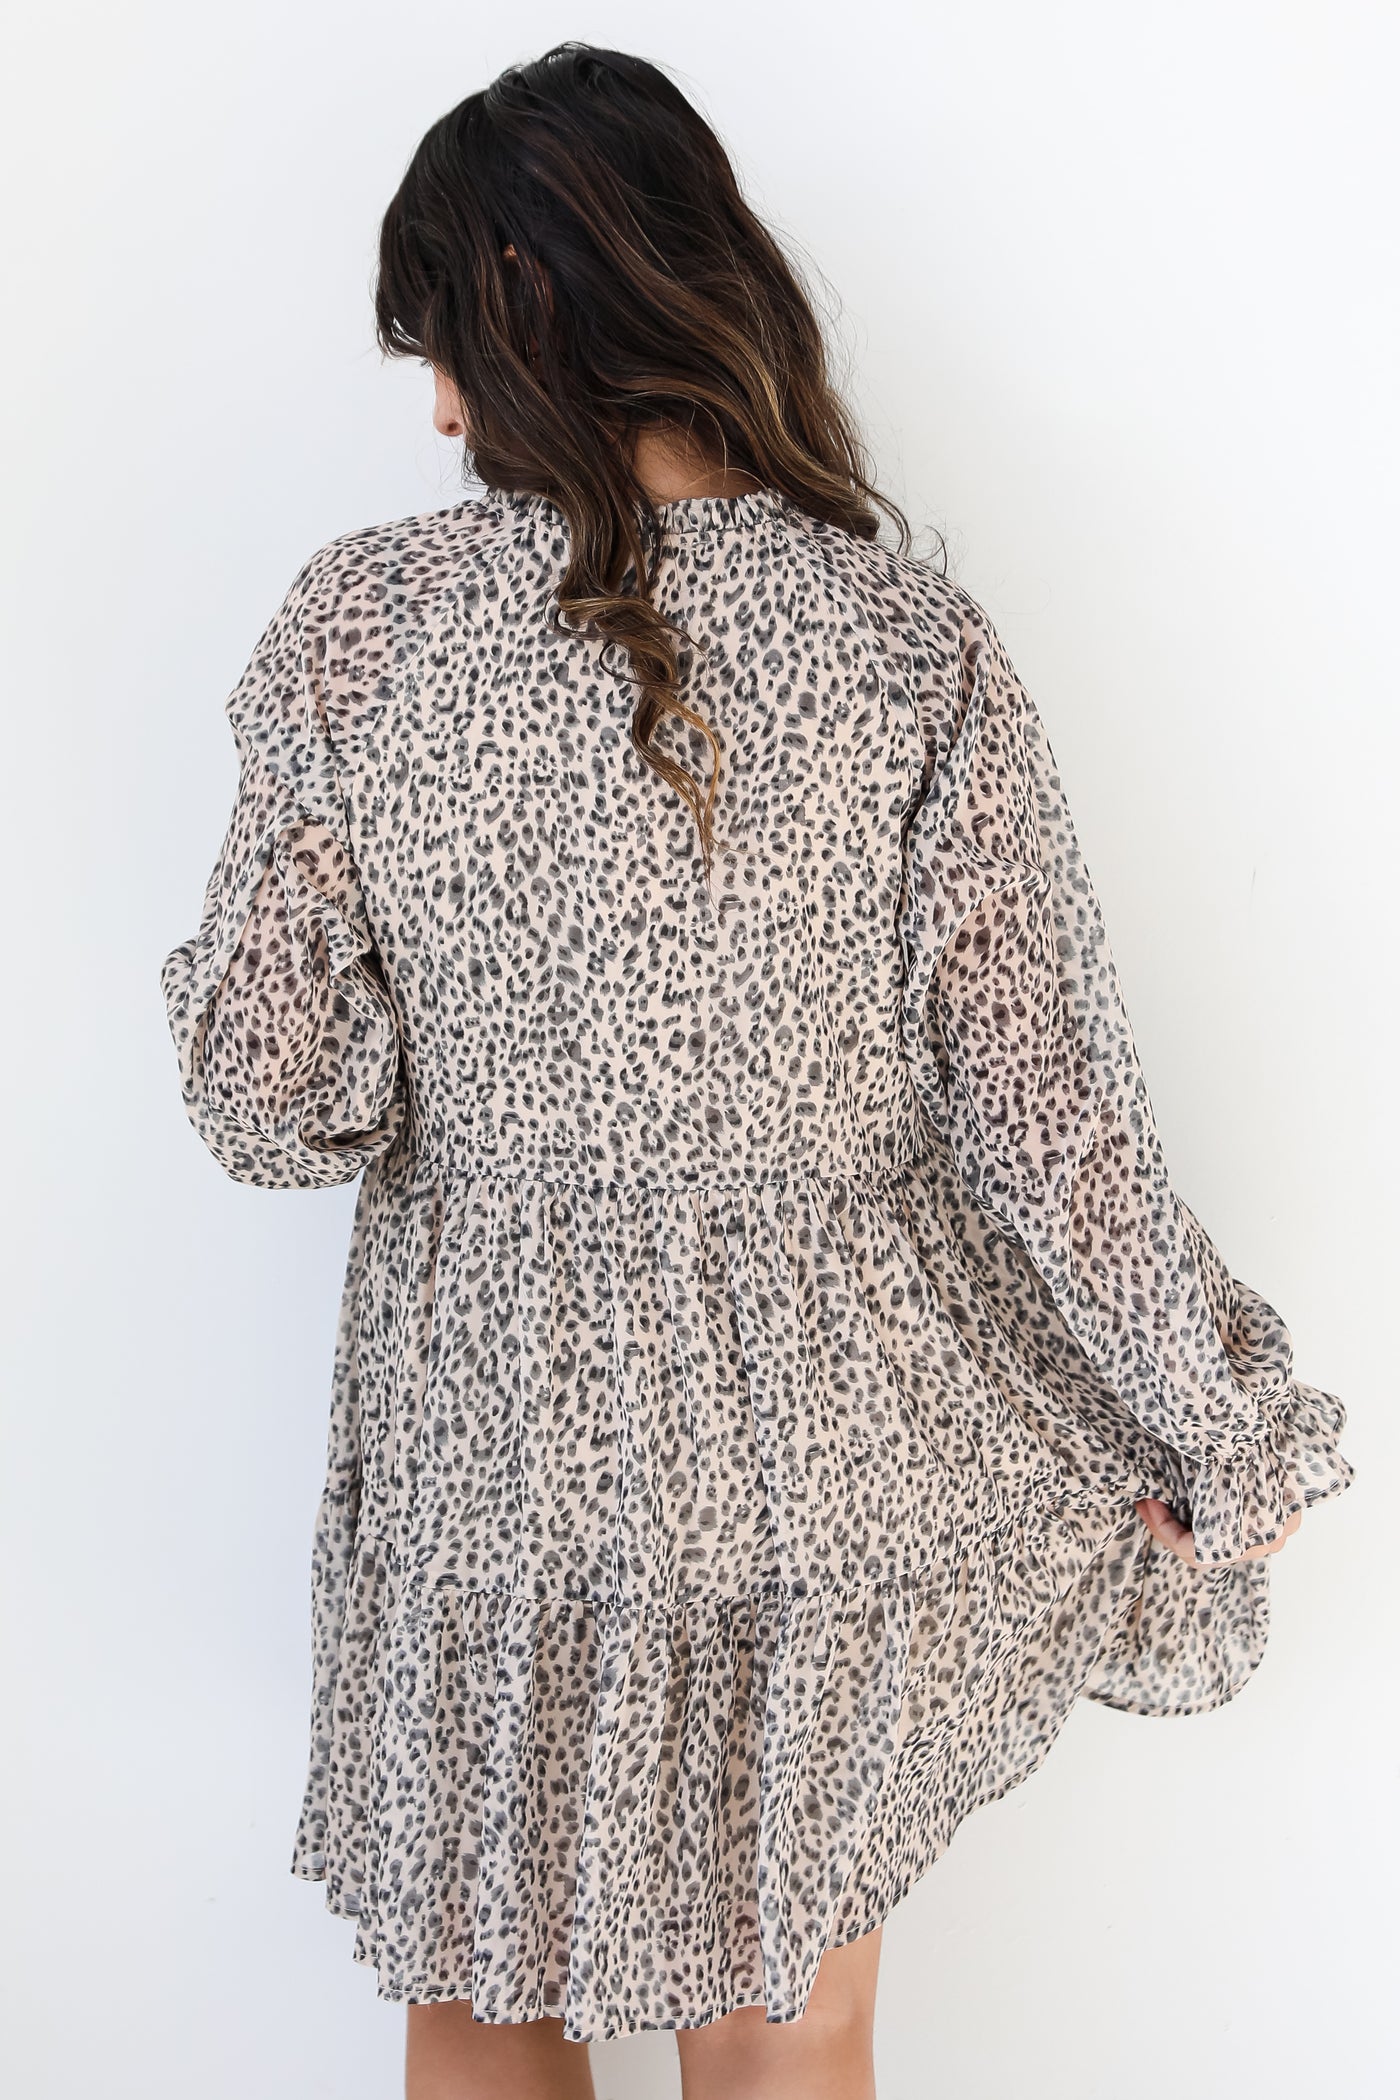 Leopard Mini Dress back view